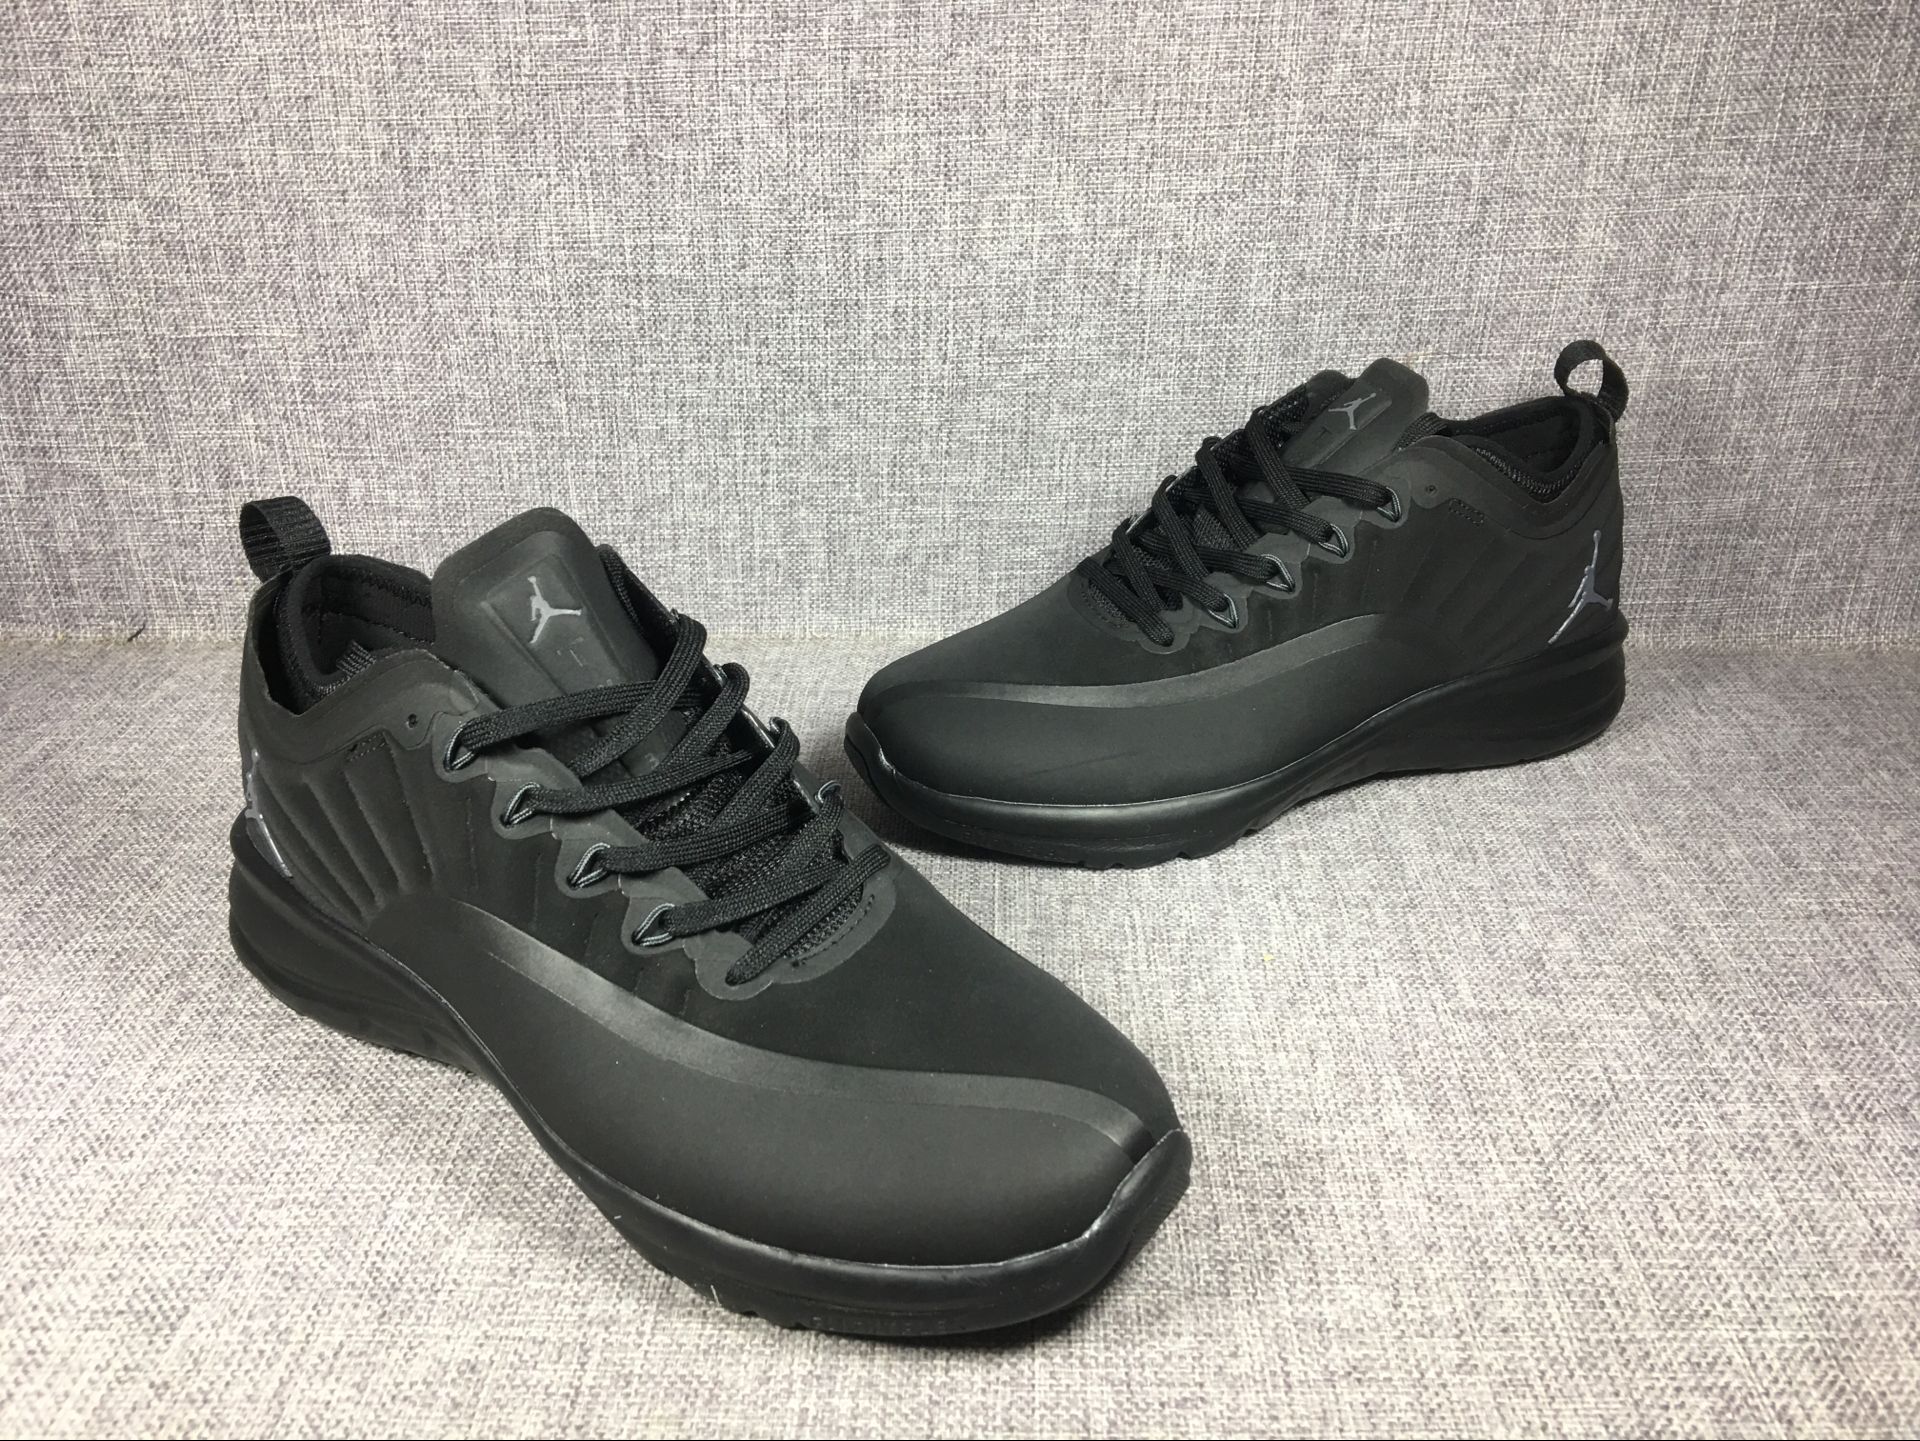 2018 New Air Jordan 12 Low All Black Shoes